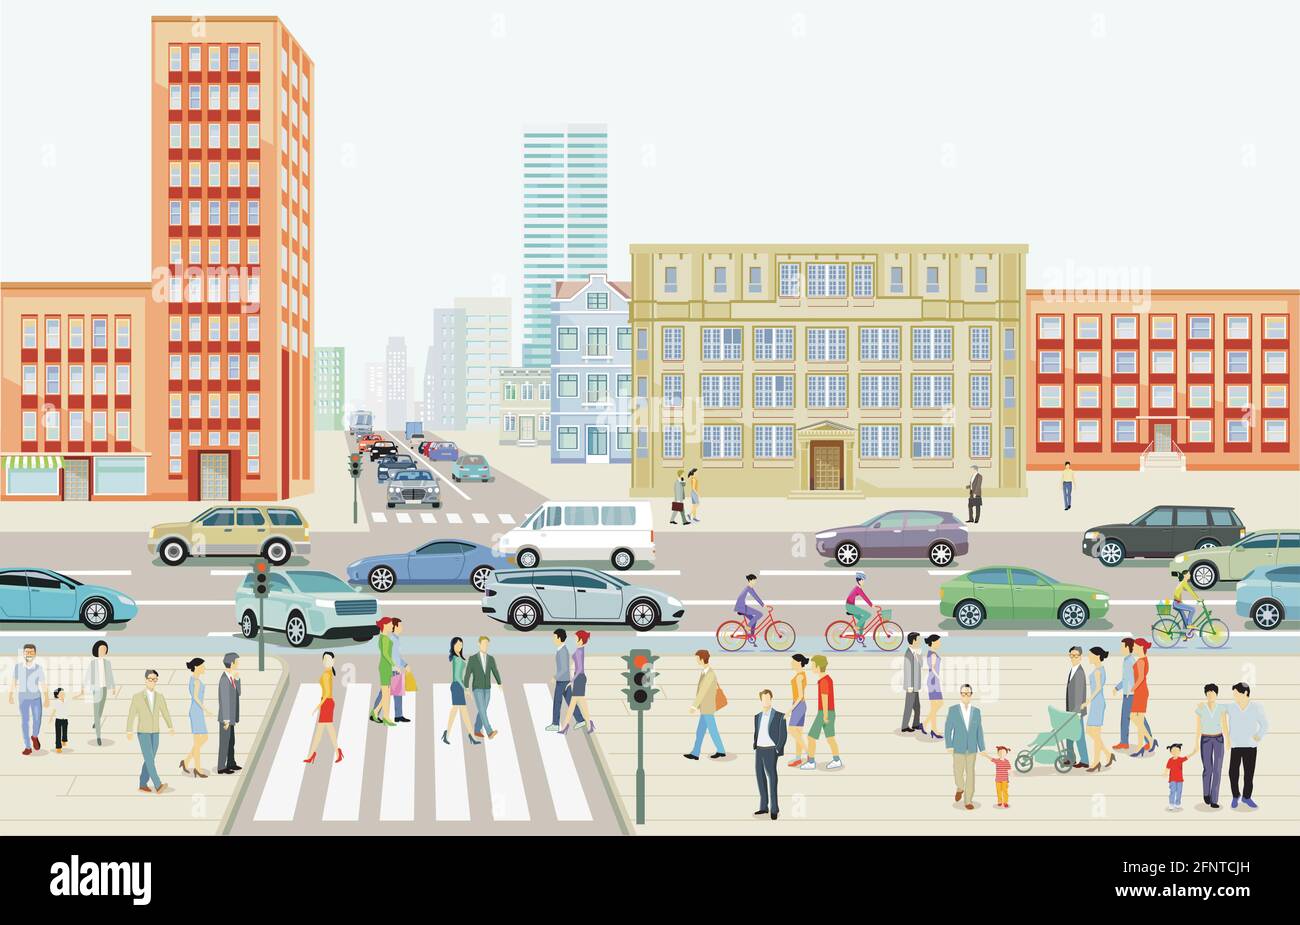 Paysage de la ville avec circulation routière et piétons sur le passage à Zébra, illustration Illustration de Vecteur